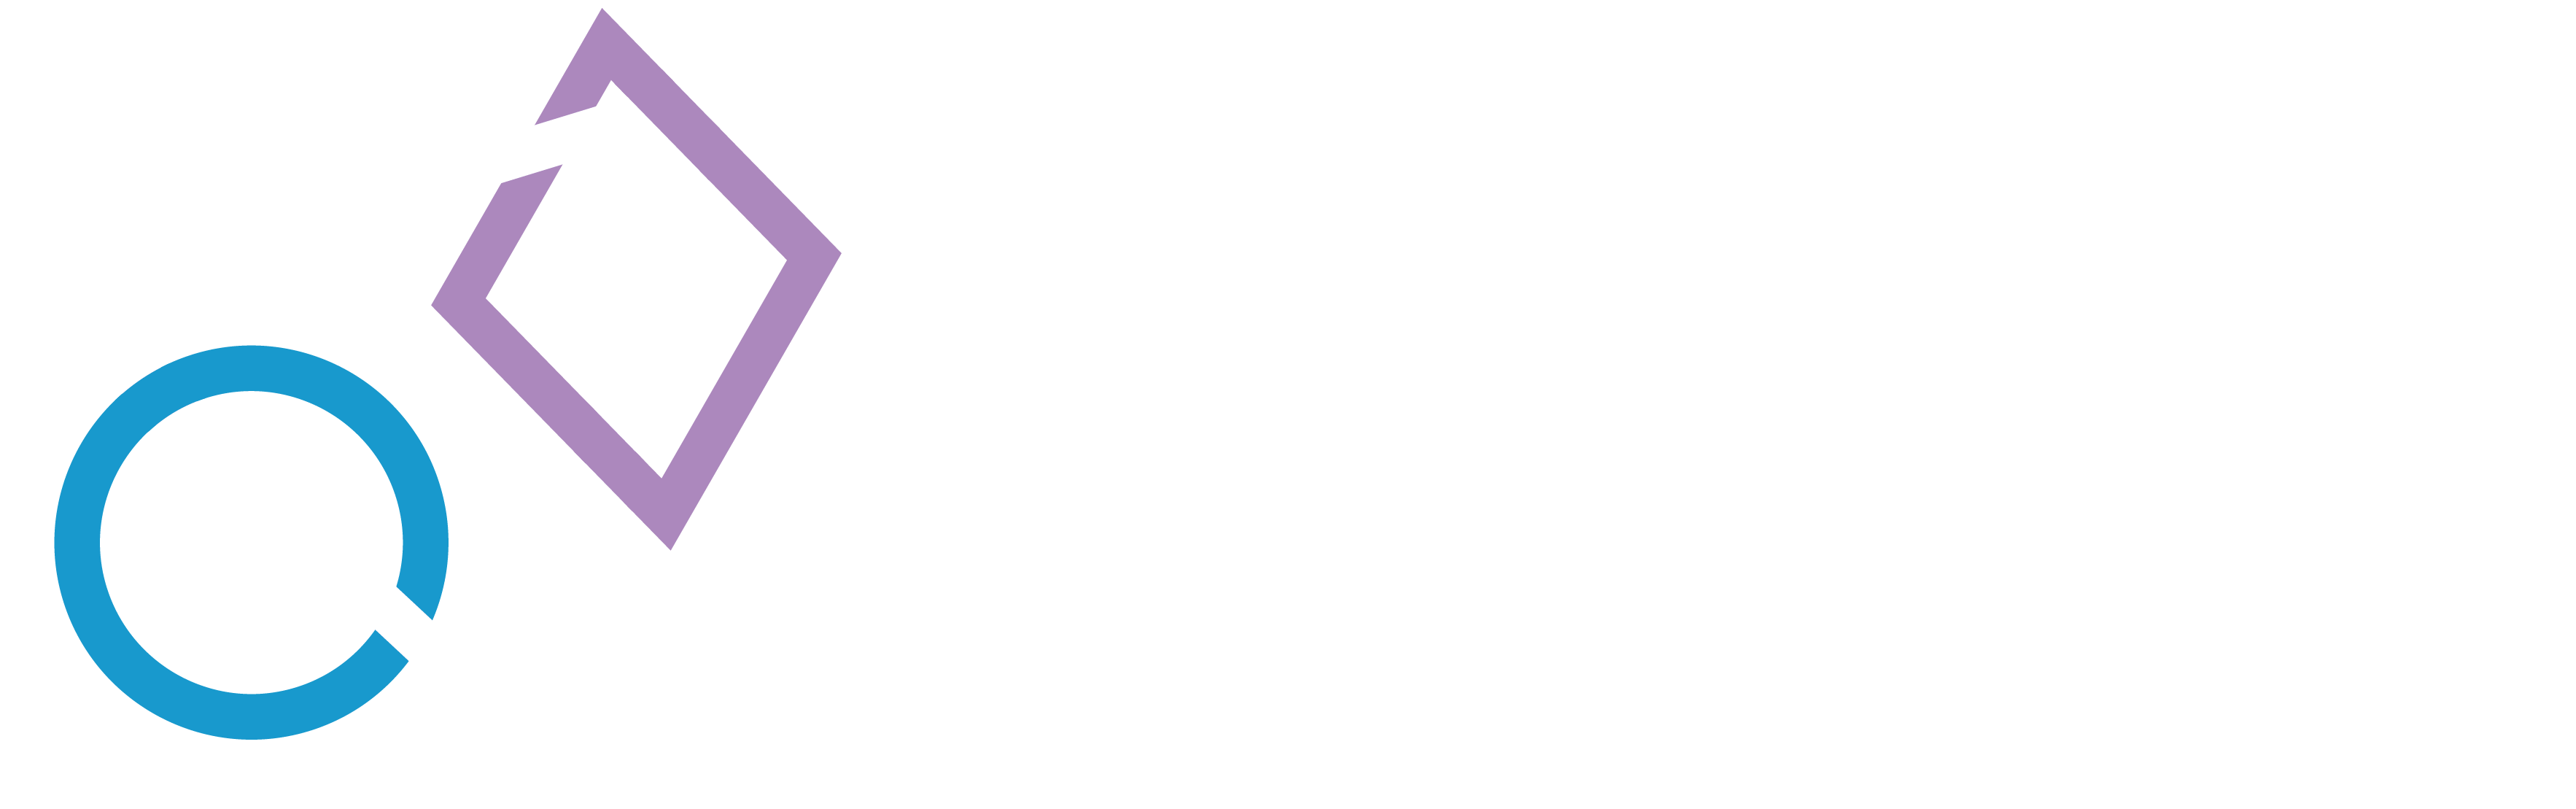 Vielfaltsprojekte GmbH